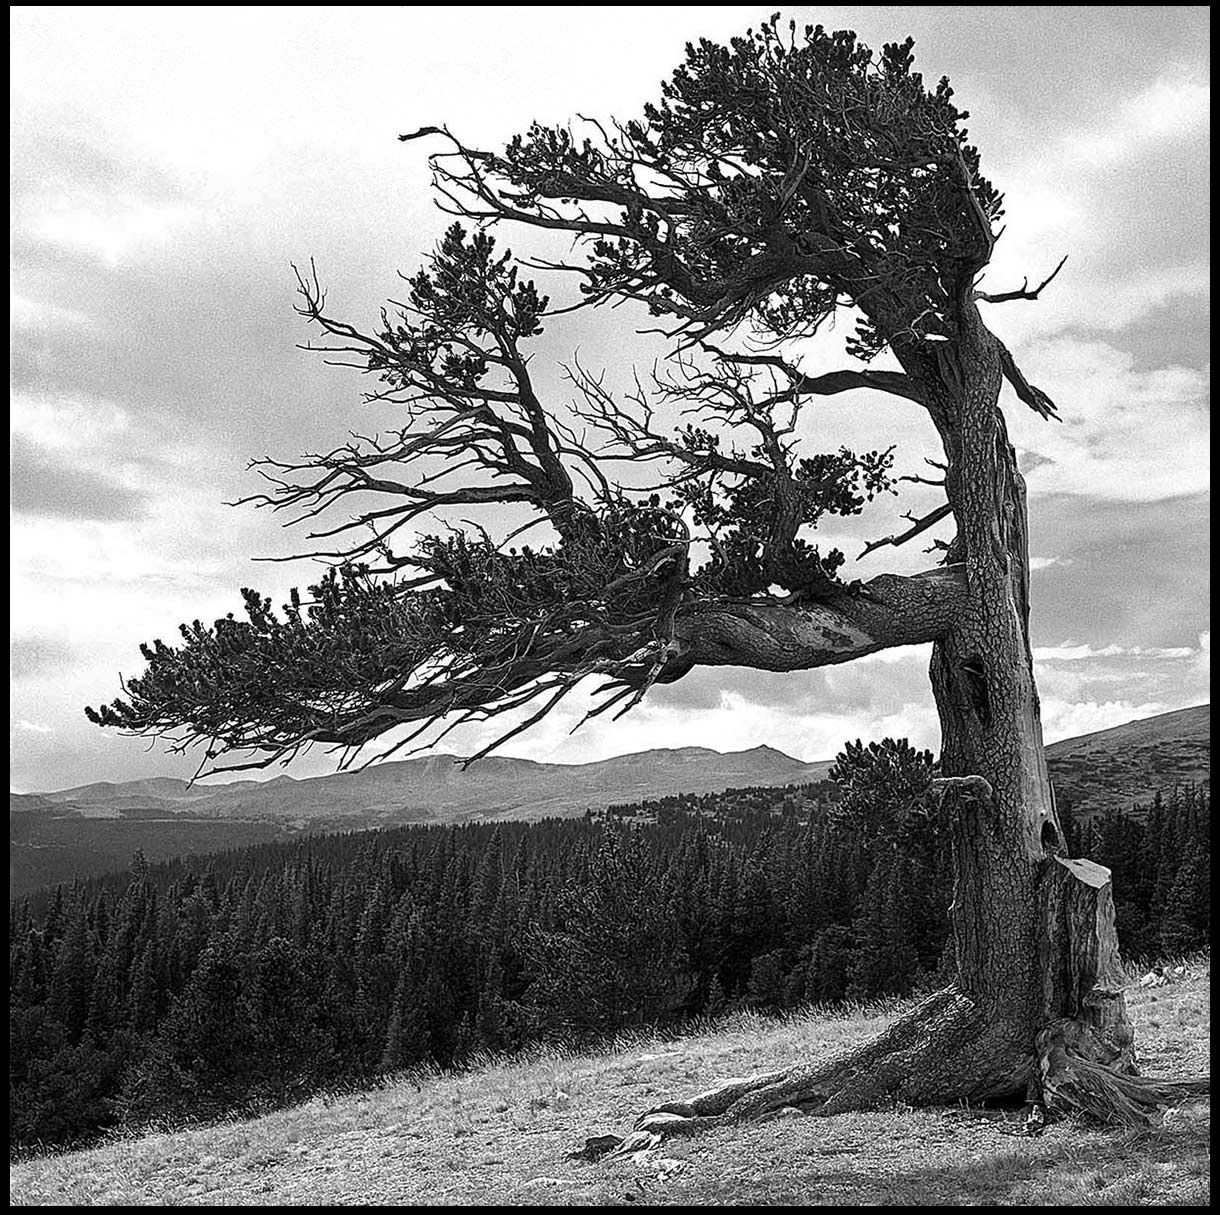 Windy Ridge Bristlecone Pine Scenic Area (Alma, CO), bristlecone pine, Colorado, b&w film, square, landscape, Stephen Collector, landscape photography, South Park,